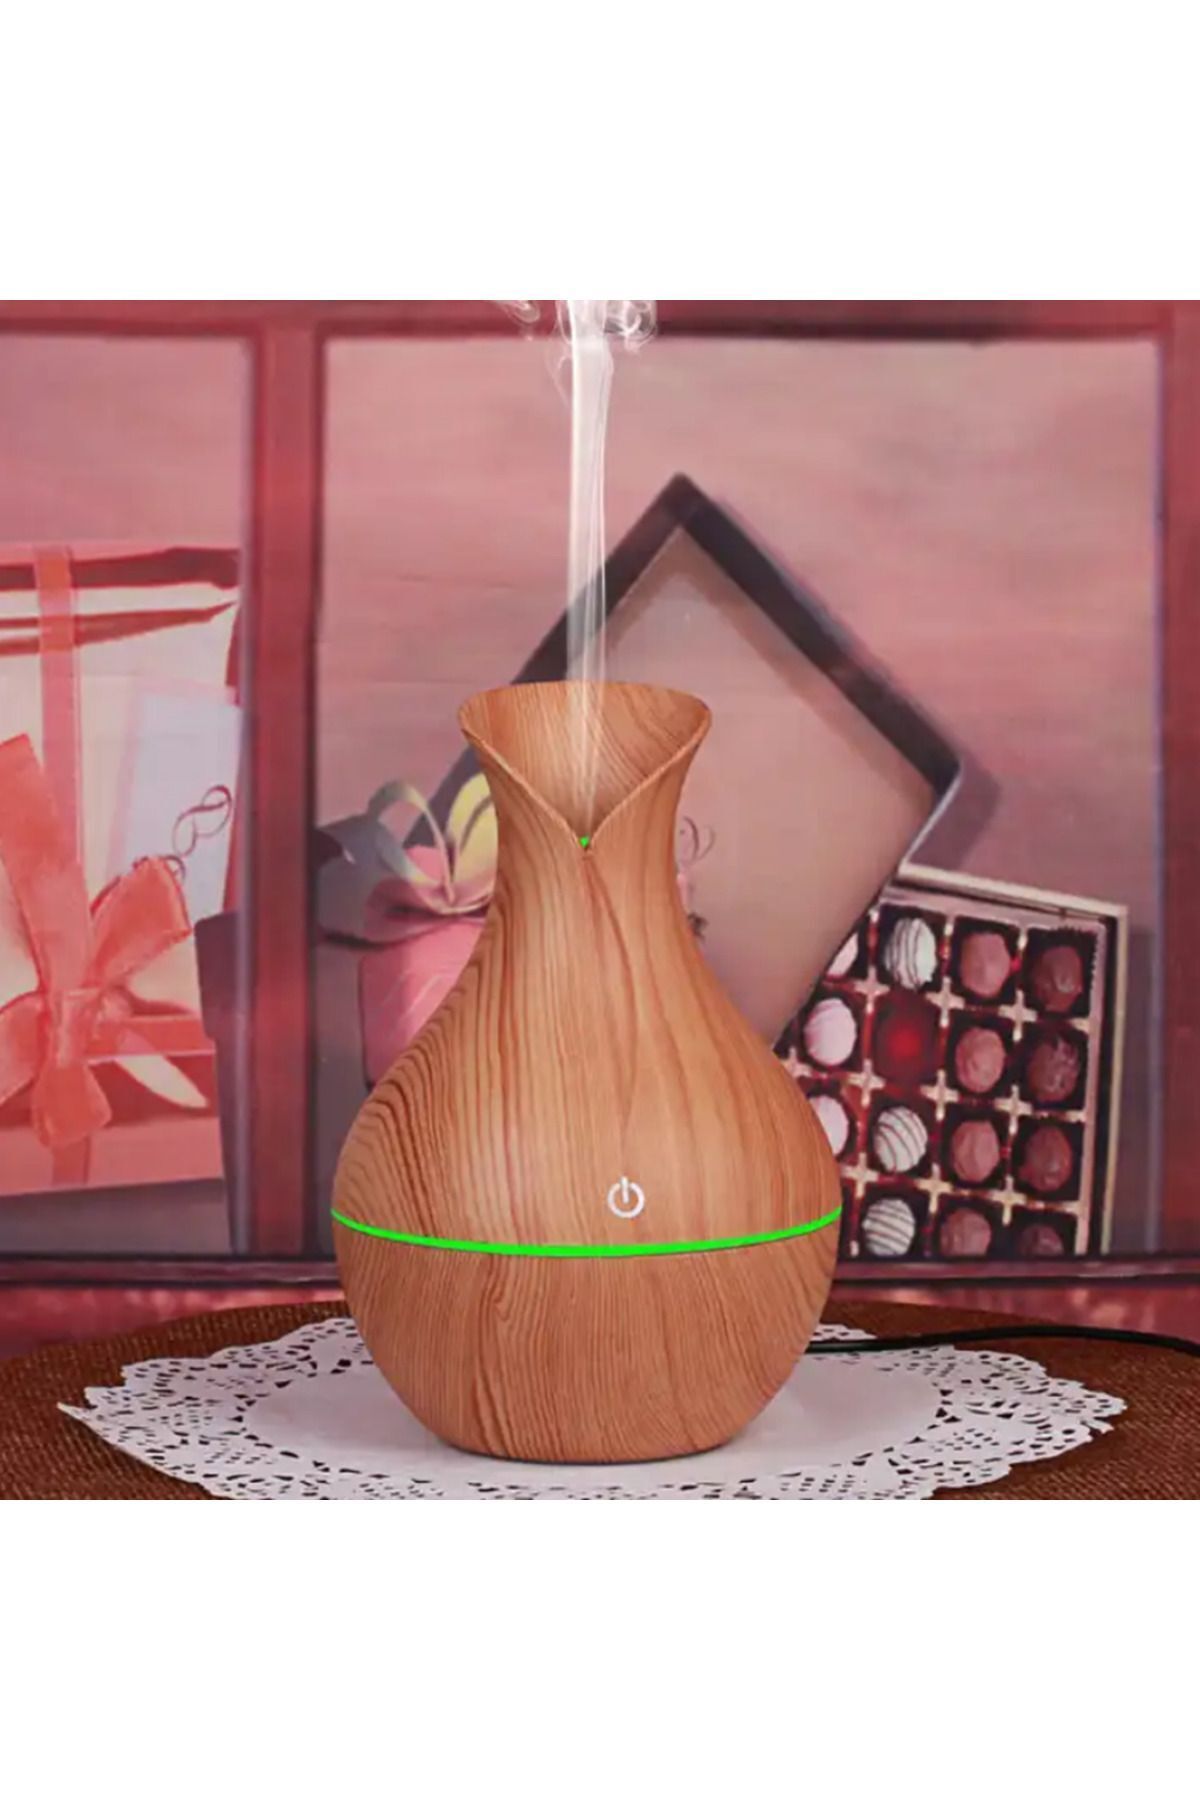 Reidan Krem Renk Vazo Modeli 200 Ml Ulrasonik Hava Nemlendirici 7 renk Buhar Makinesi Ve Aroma Difüzörü